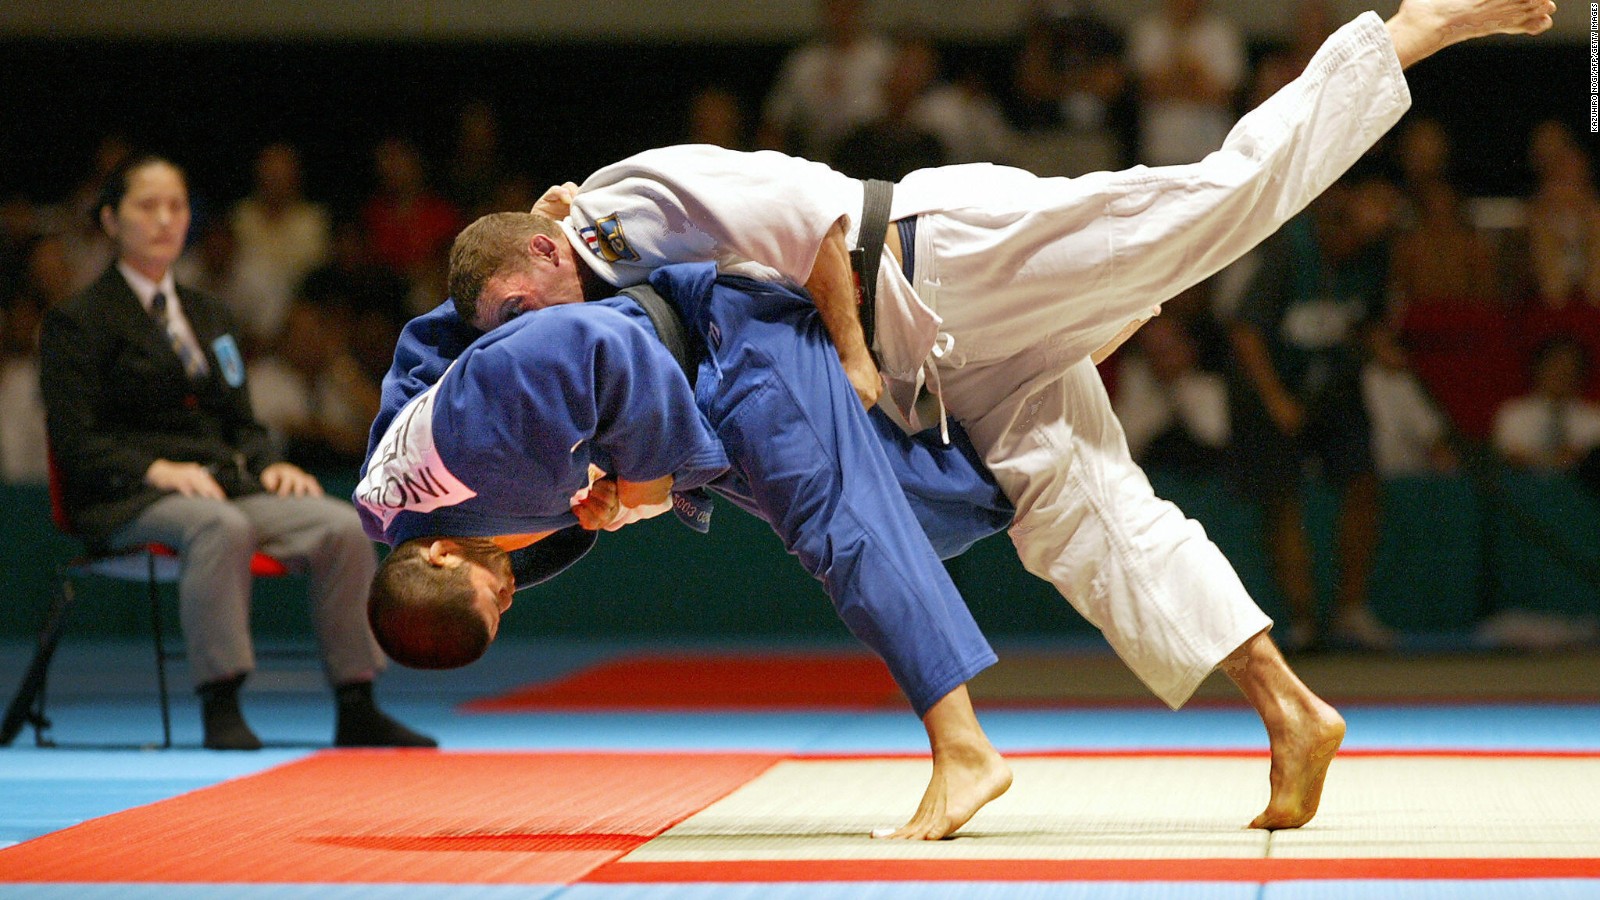 Judo Sports In Japan , HD Wallpaper & Backgrounds